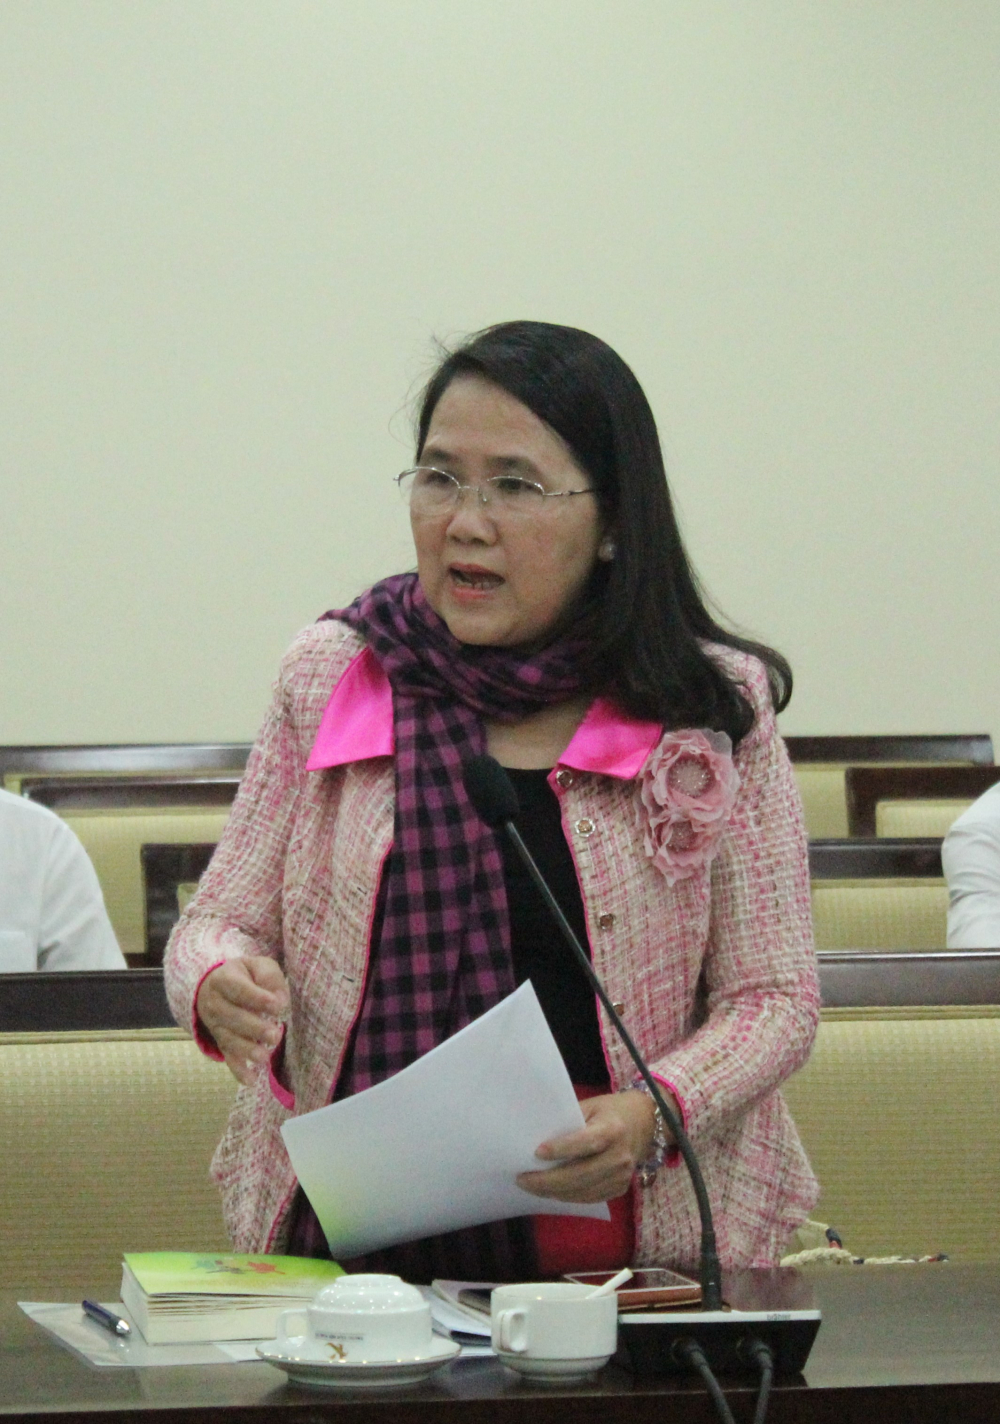 Bà Bùi Thị Ngọc Trang đề cao sự tôn trọng lẫn nhau và lòng chung thủy trong xây dựng gia đình bền vững.